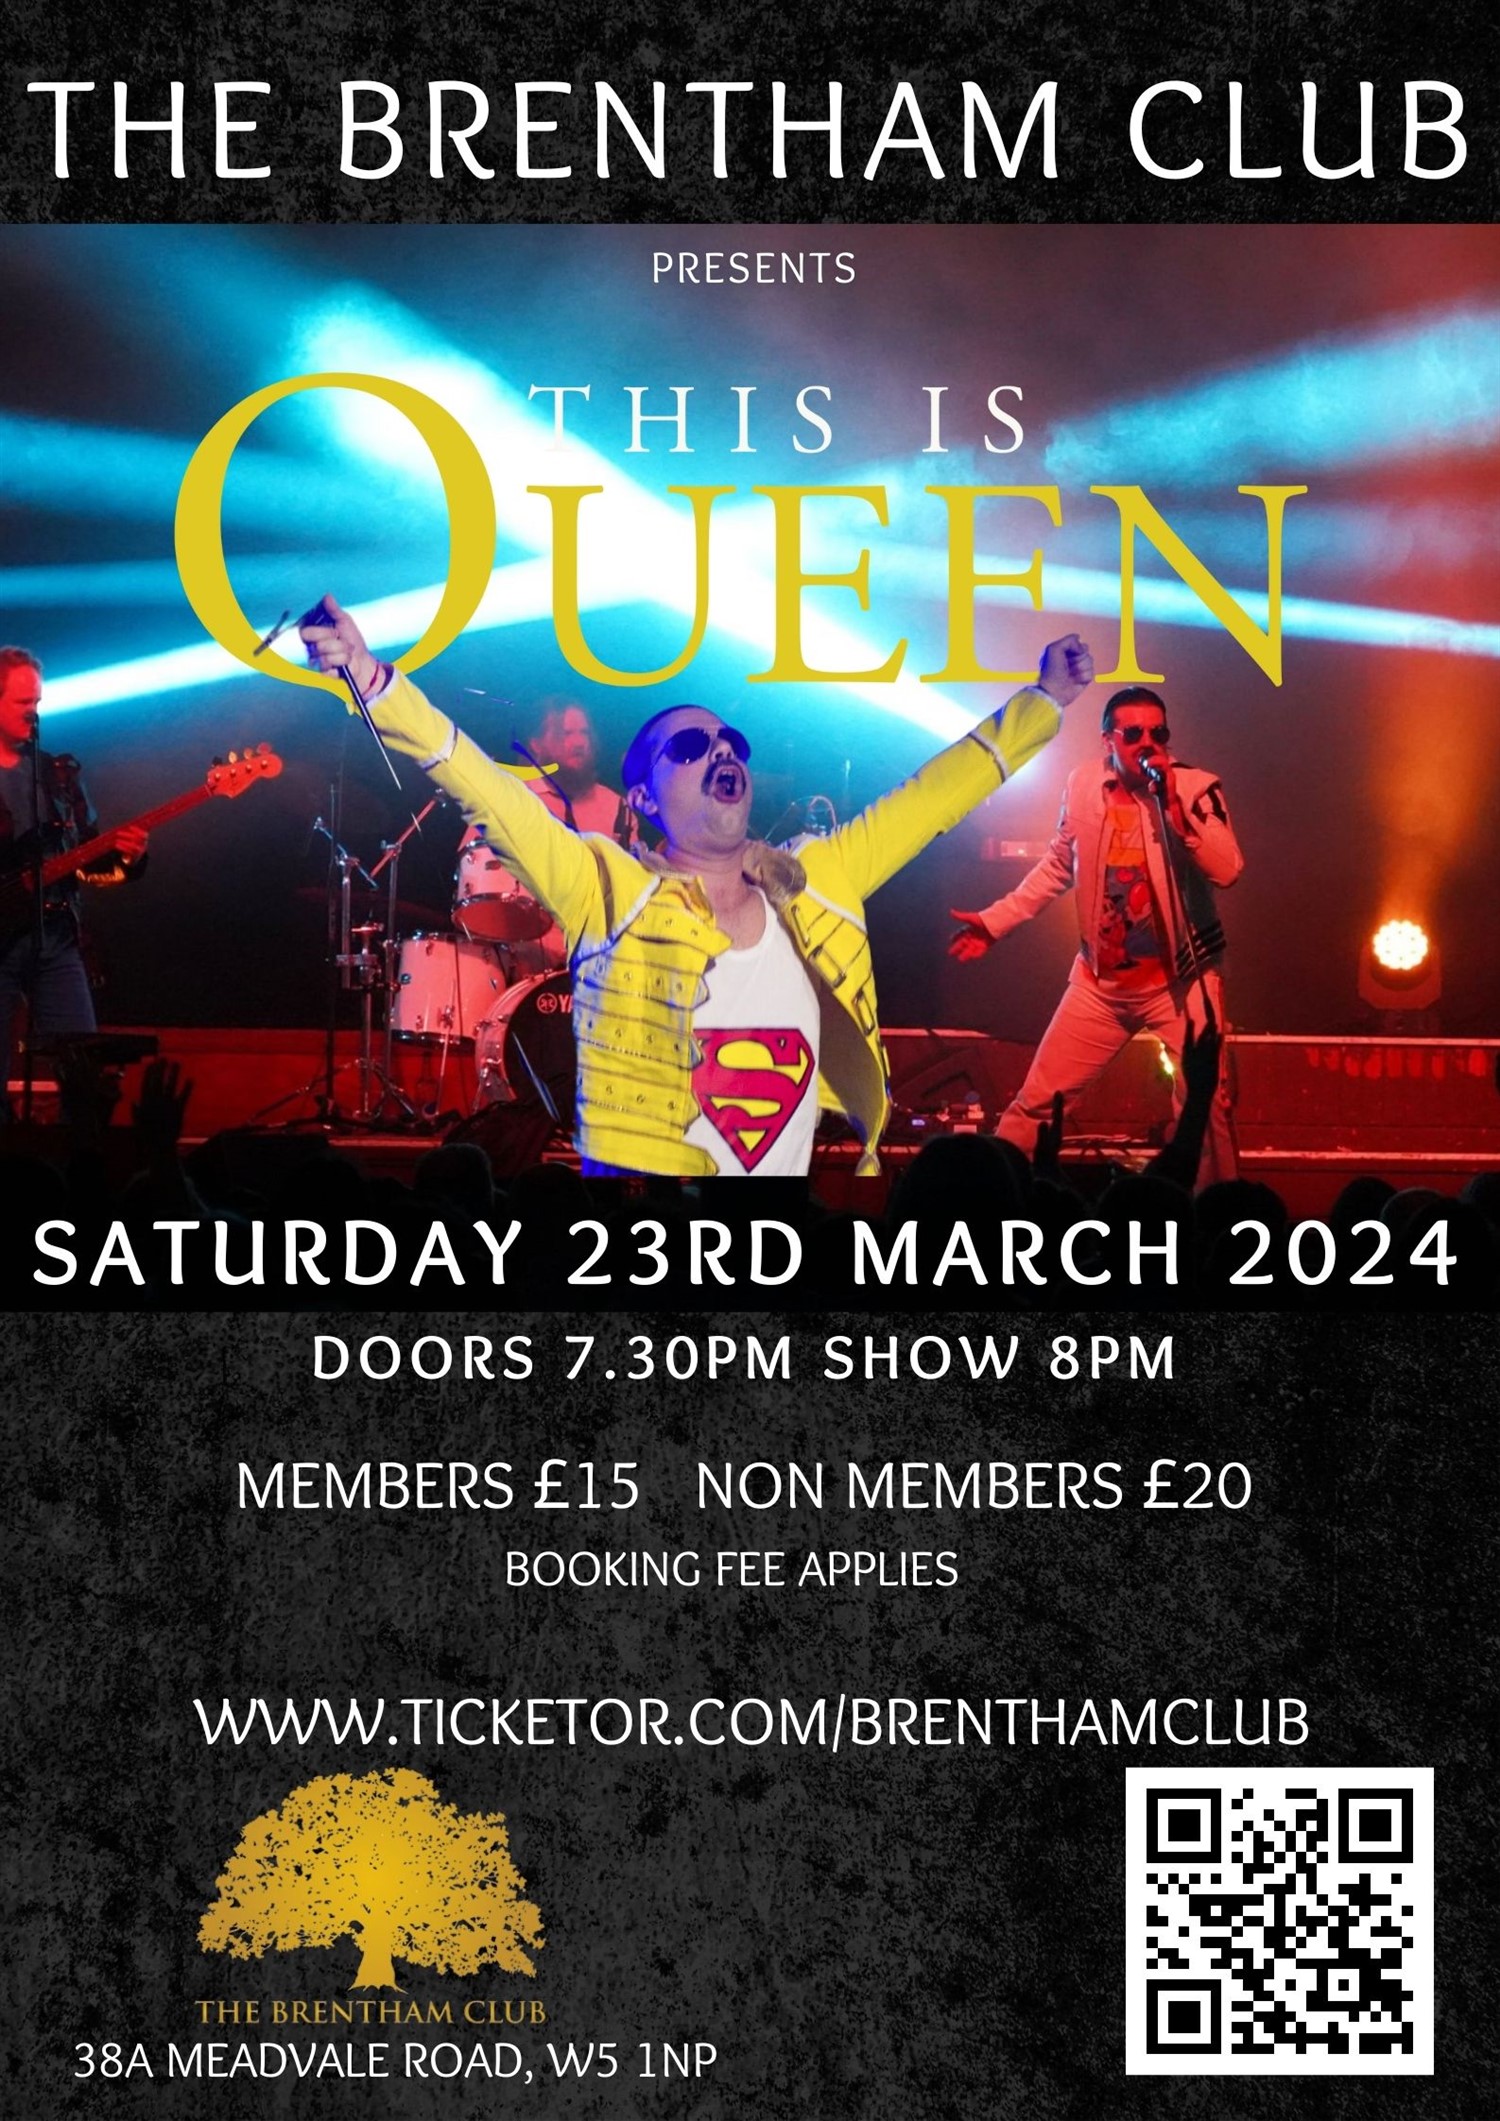 This is Queen Tribute on mars 23, 20:00@The Brentham Club - Achetez des billets et obtenez des informations surBrenthamclub.co.uk 